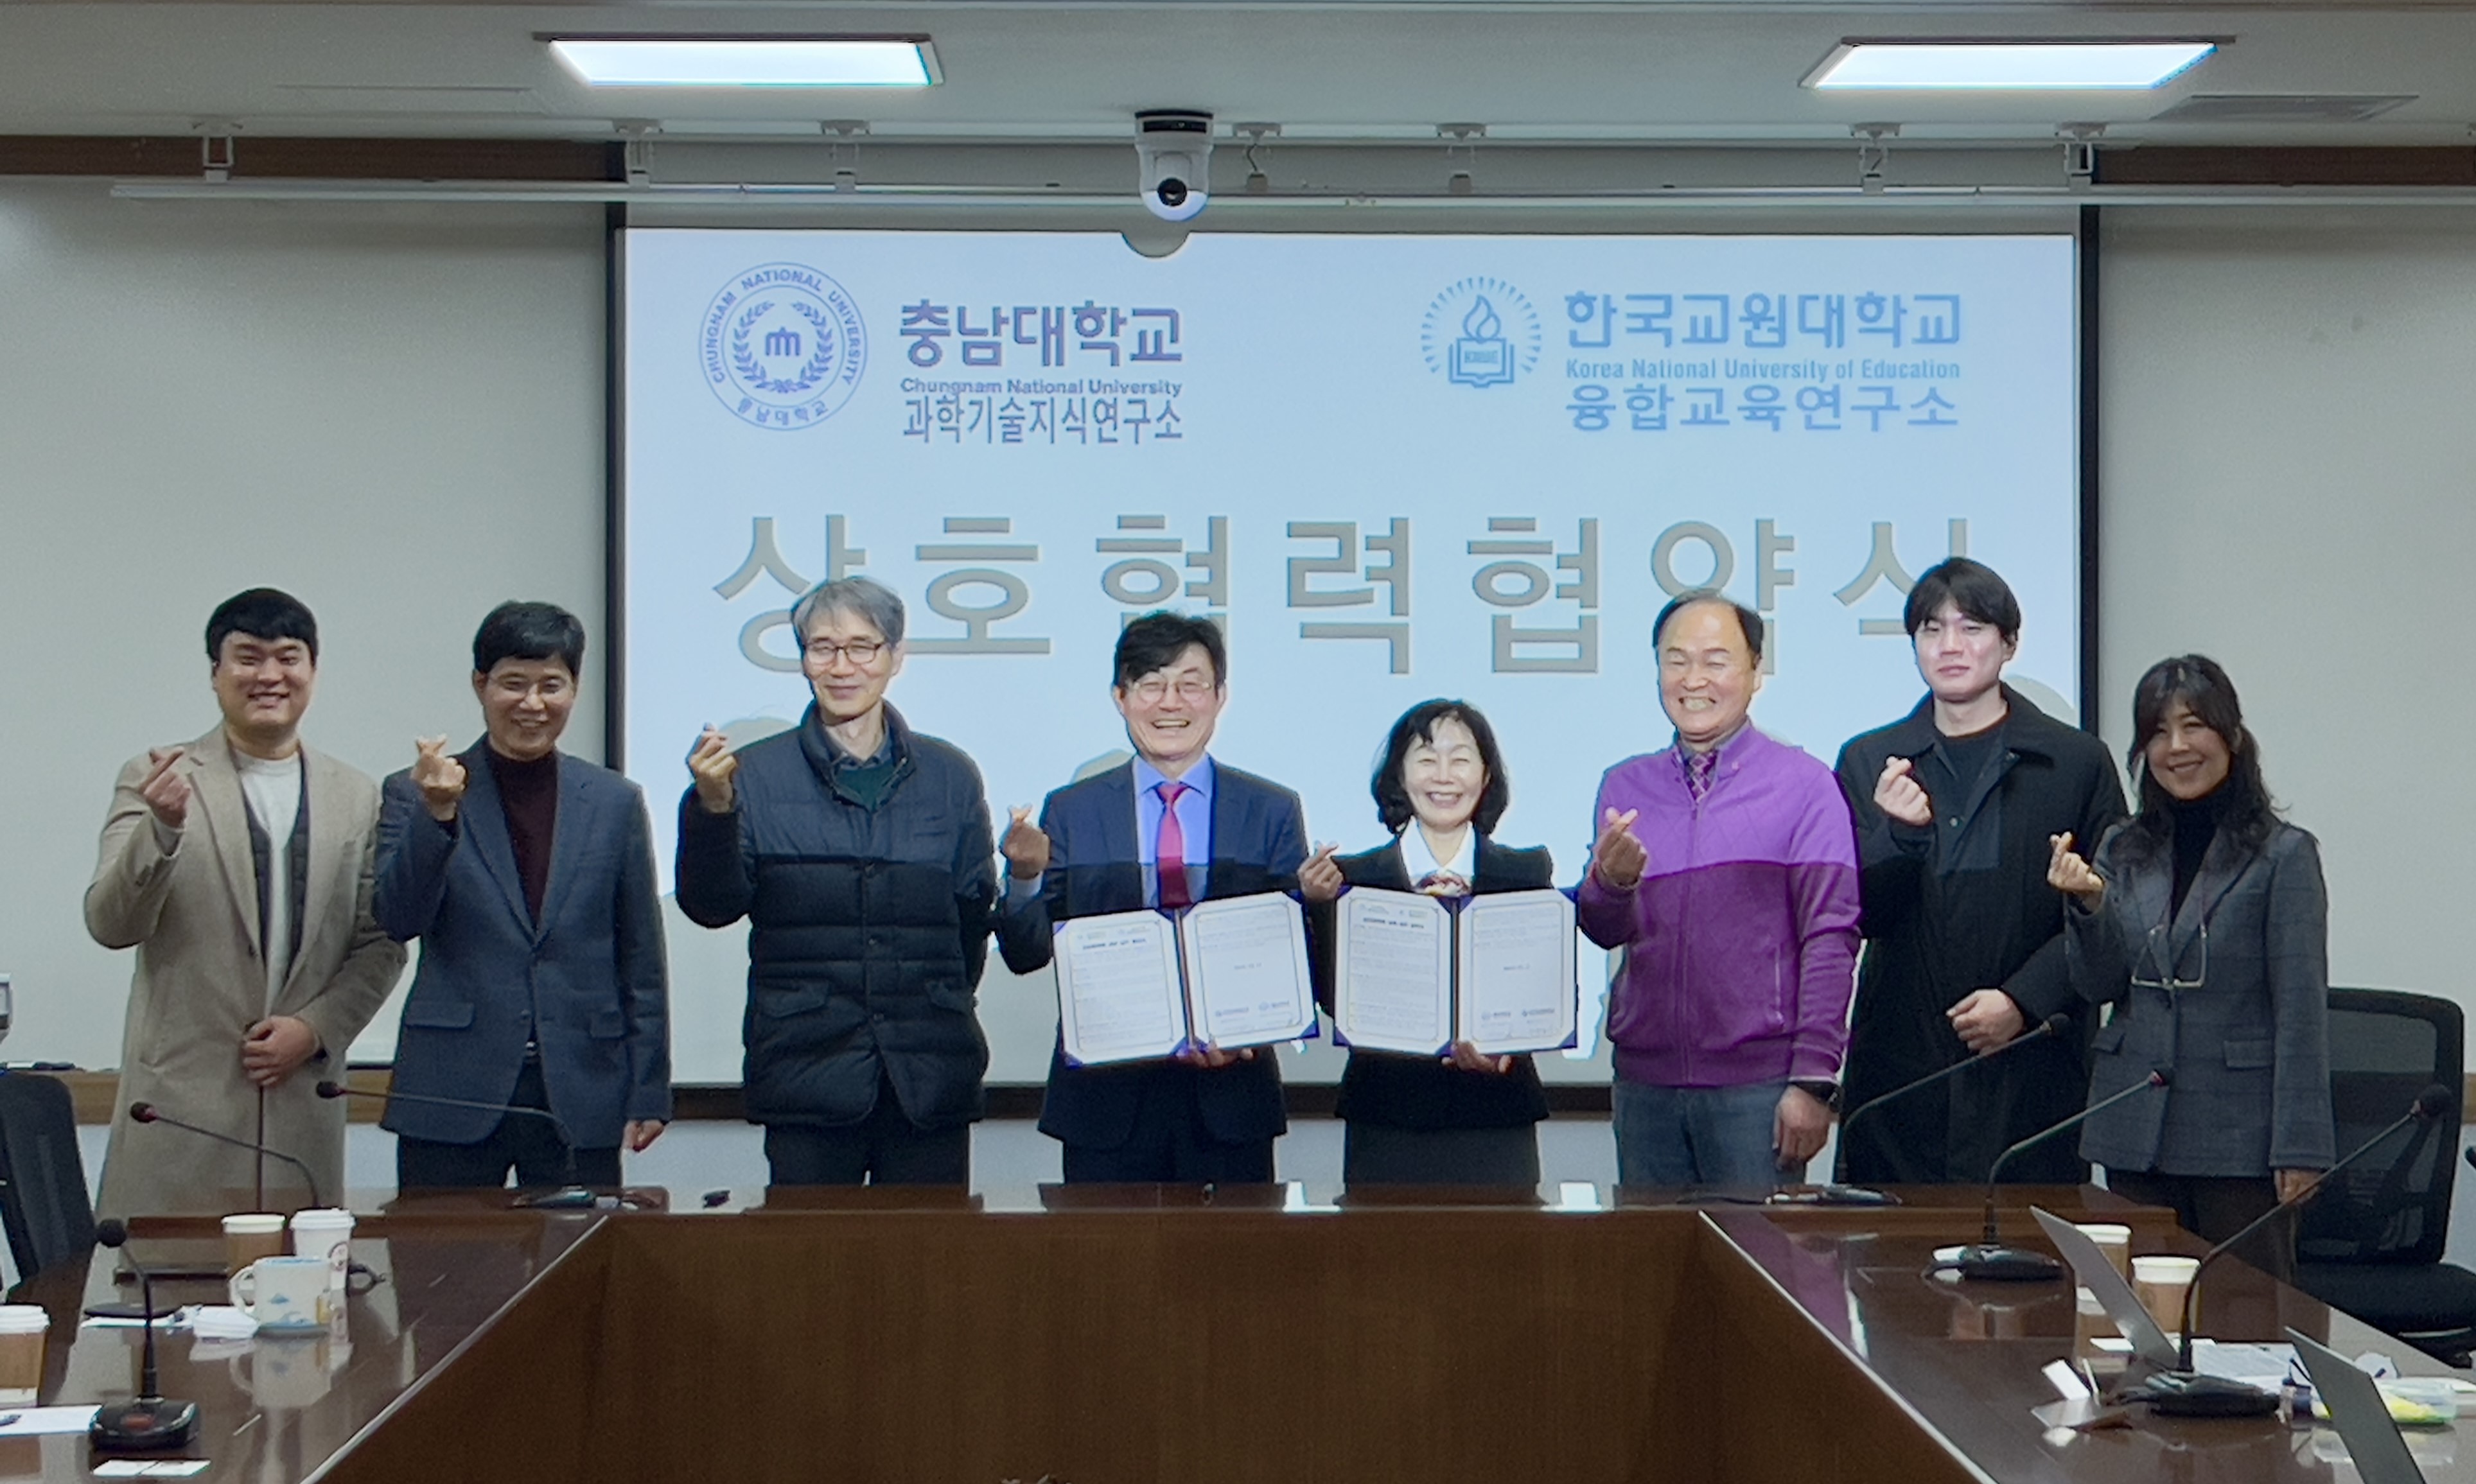 과학기술지식연구소-한국교원대 융합교육연구소, 업무협약 체결 사진1